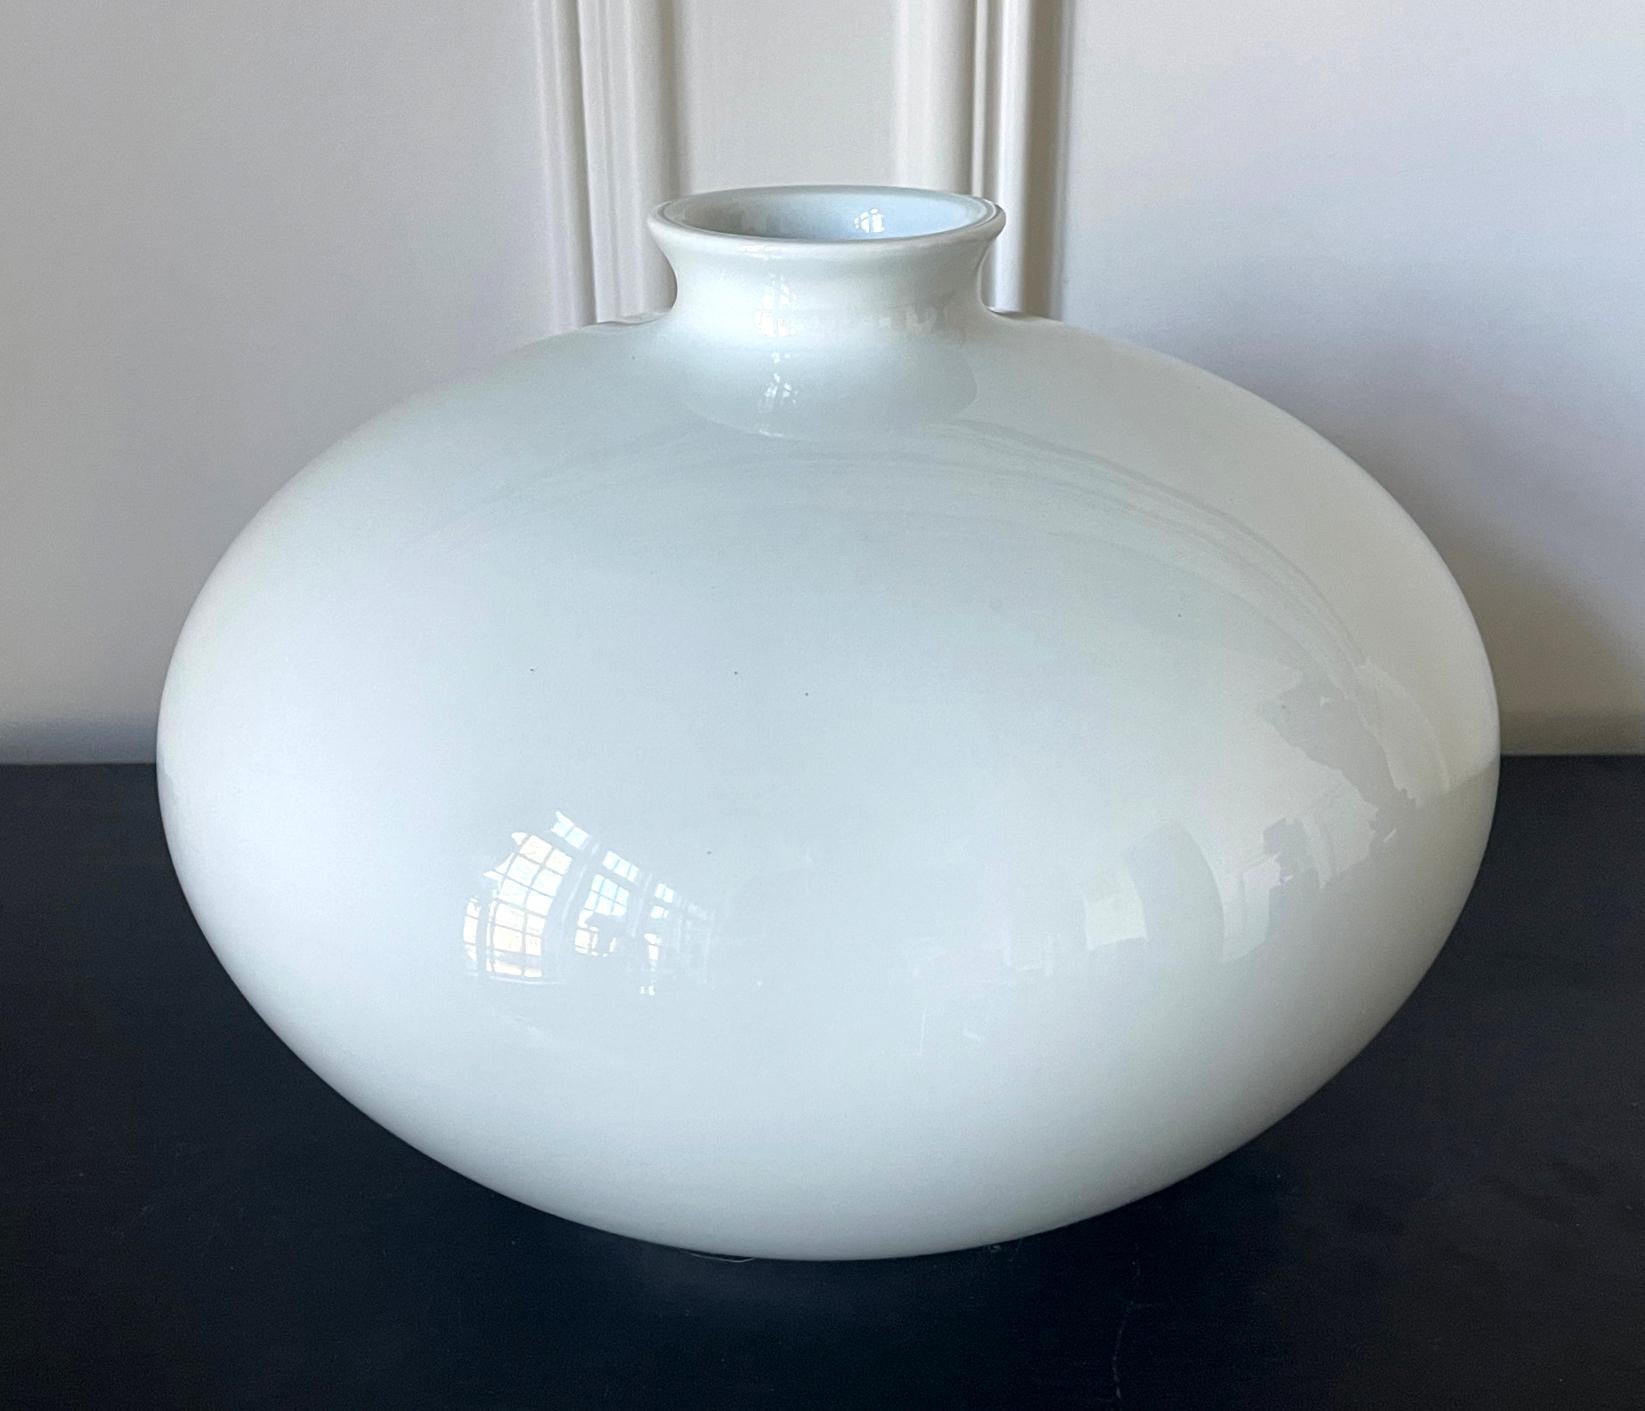 Eine große glasierte weiße Porzellanvase in Form eines Kruges des japanischen Keramikkünstlers Inoue Manji (Japaner, geb. 1929). Die Vase hat eine minimalistische Form, ist reinweiß mit einem sehr subtilen blauen Farbton und hat eine perfekte, fast